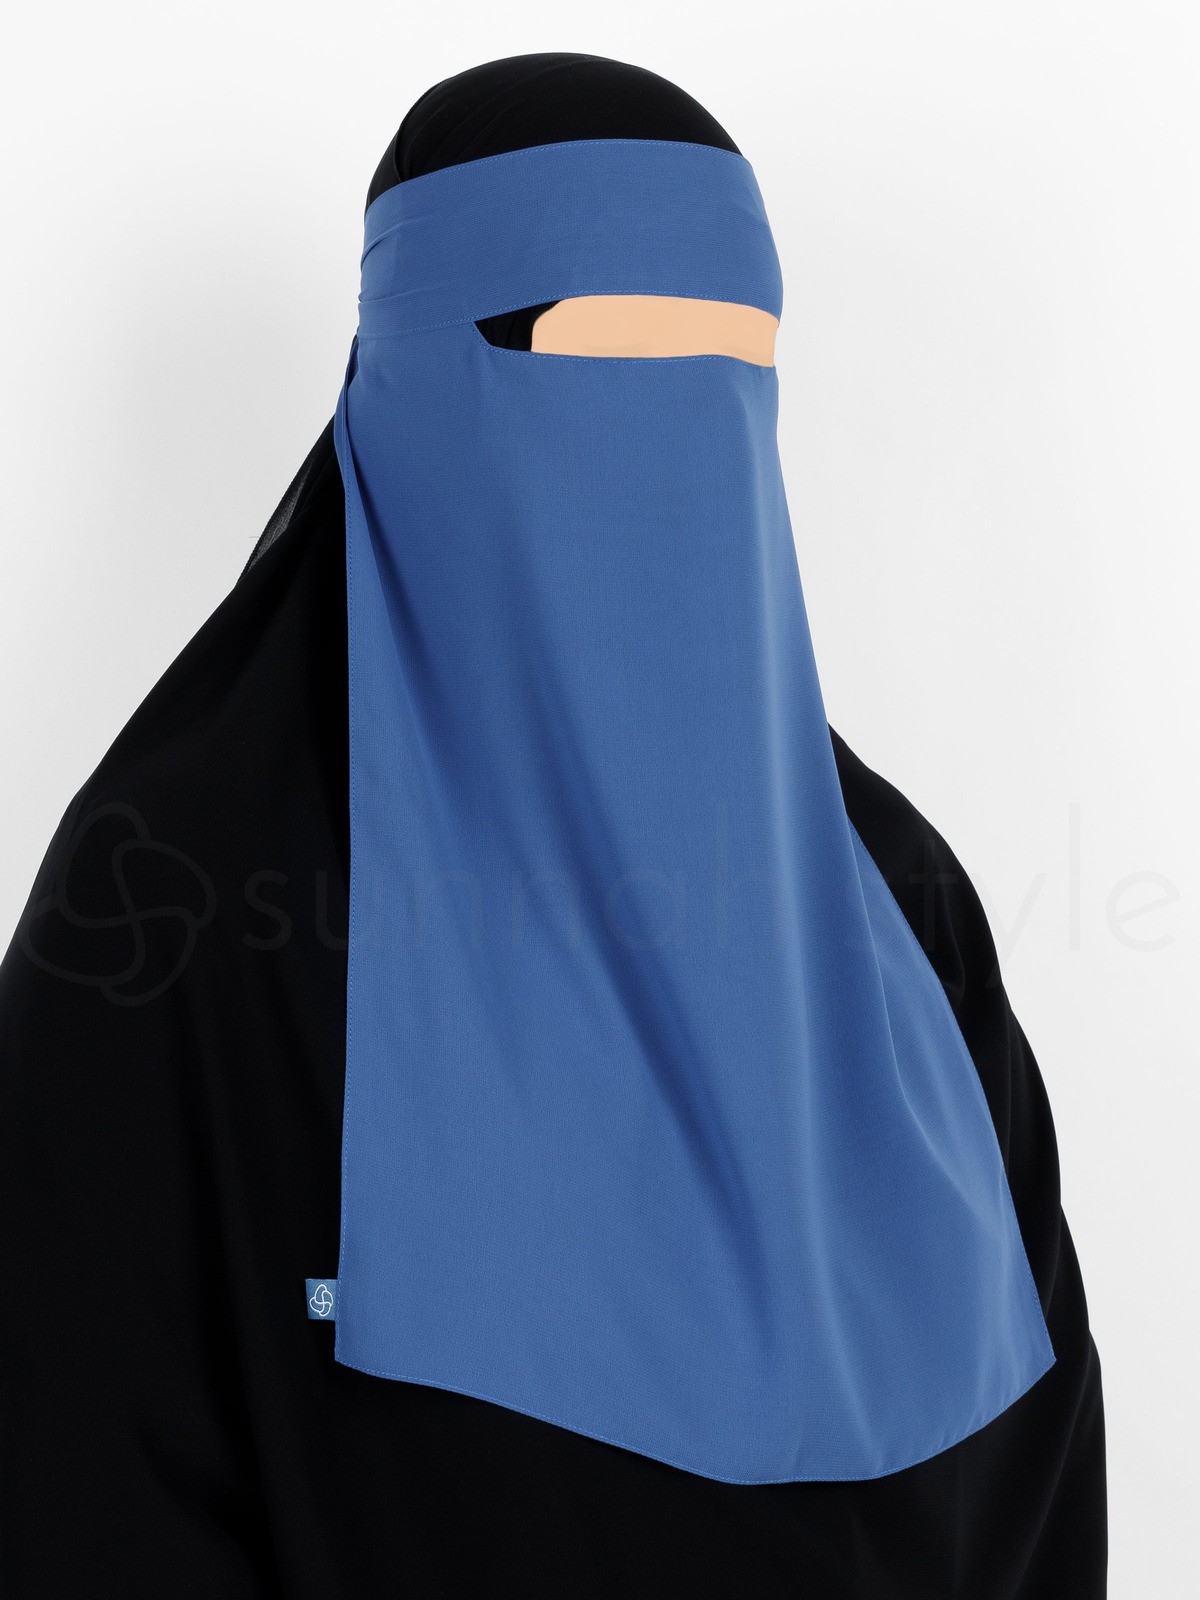 Sunnah Style - Narrow No-Pinch One Layer Niqab (Blue Jay)